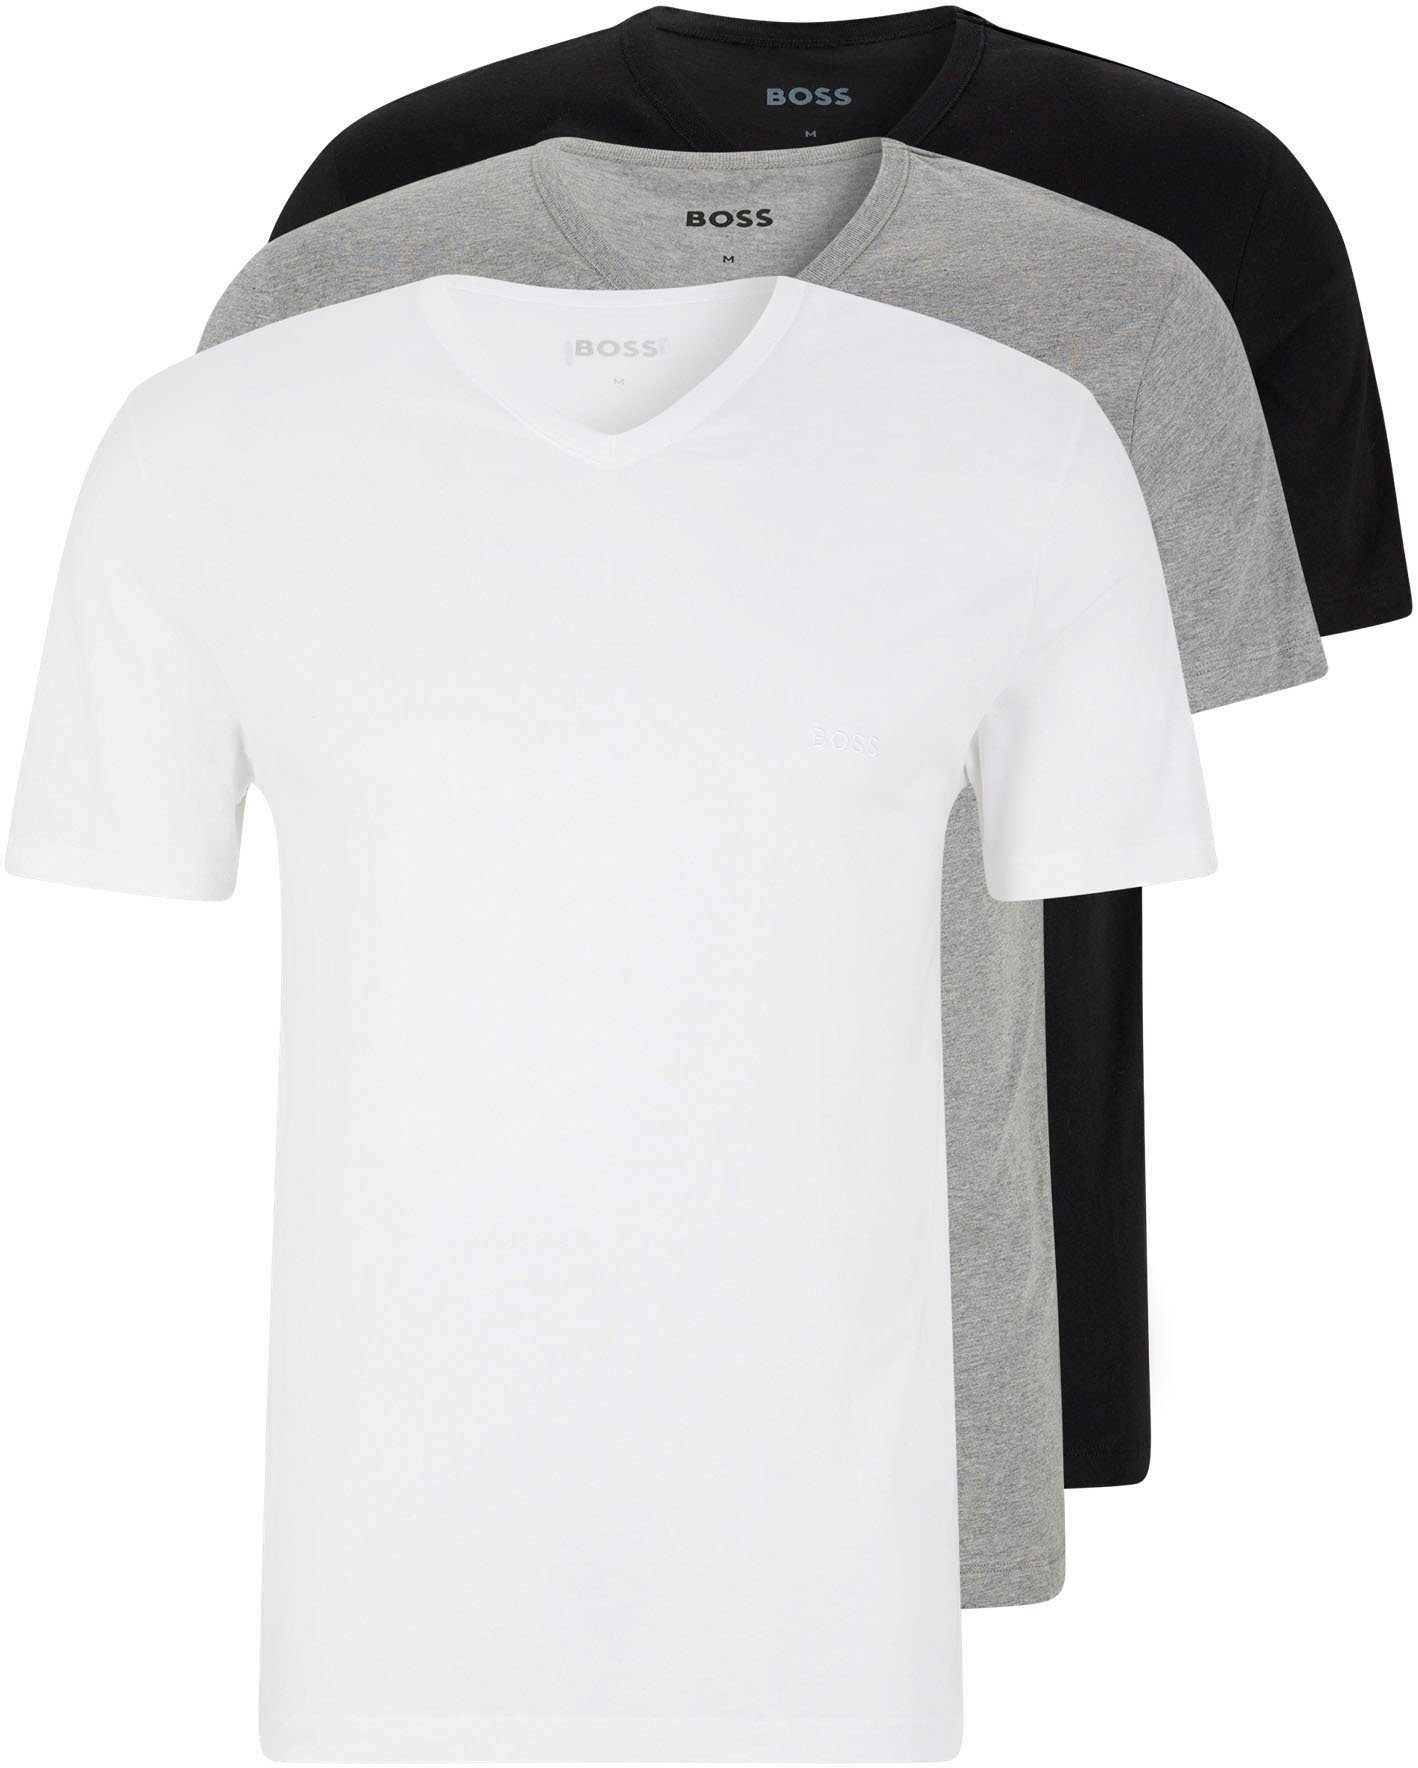 BOSS V-Shirt T-Shirt VN 3P CO (Packung) assorted pre-pack, grau-meliert, schwarz